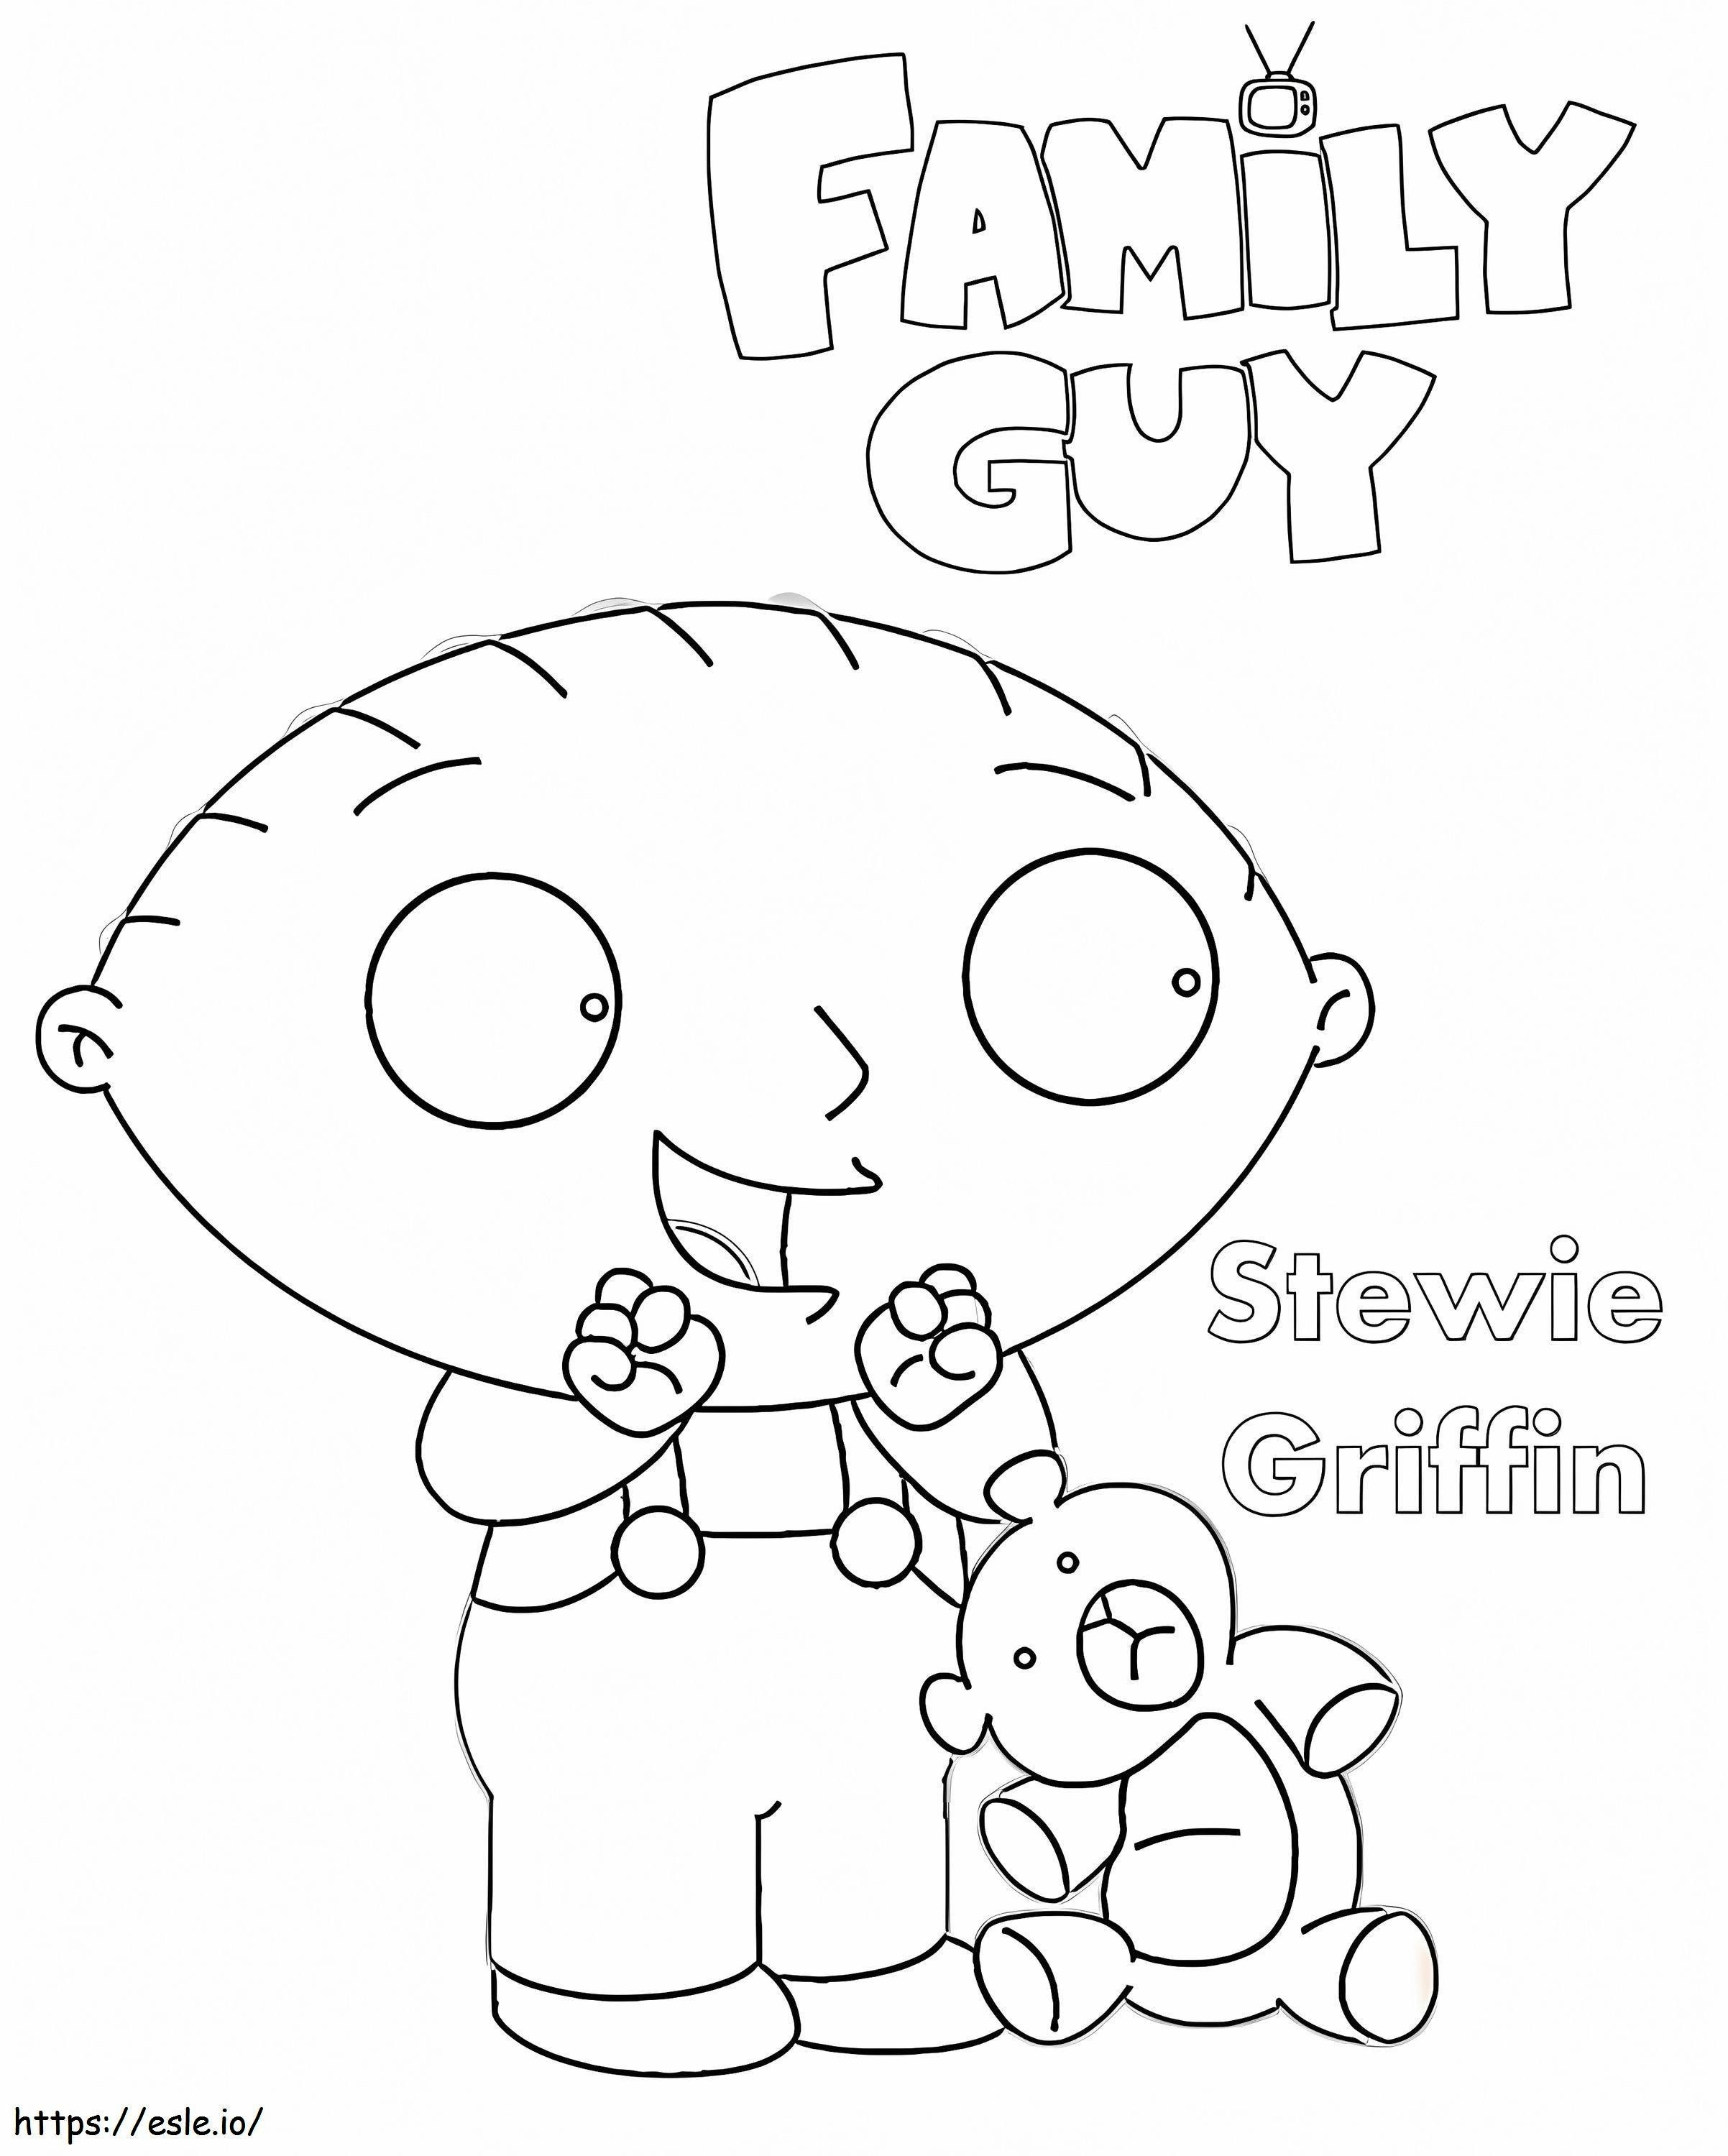 Stewie Griffin Family Guy kifestő